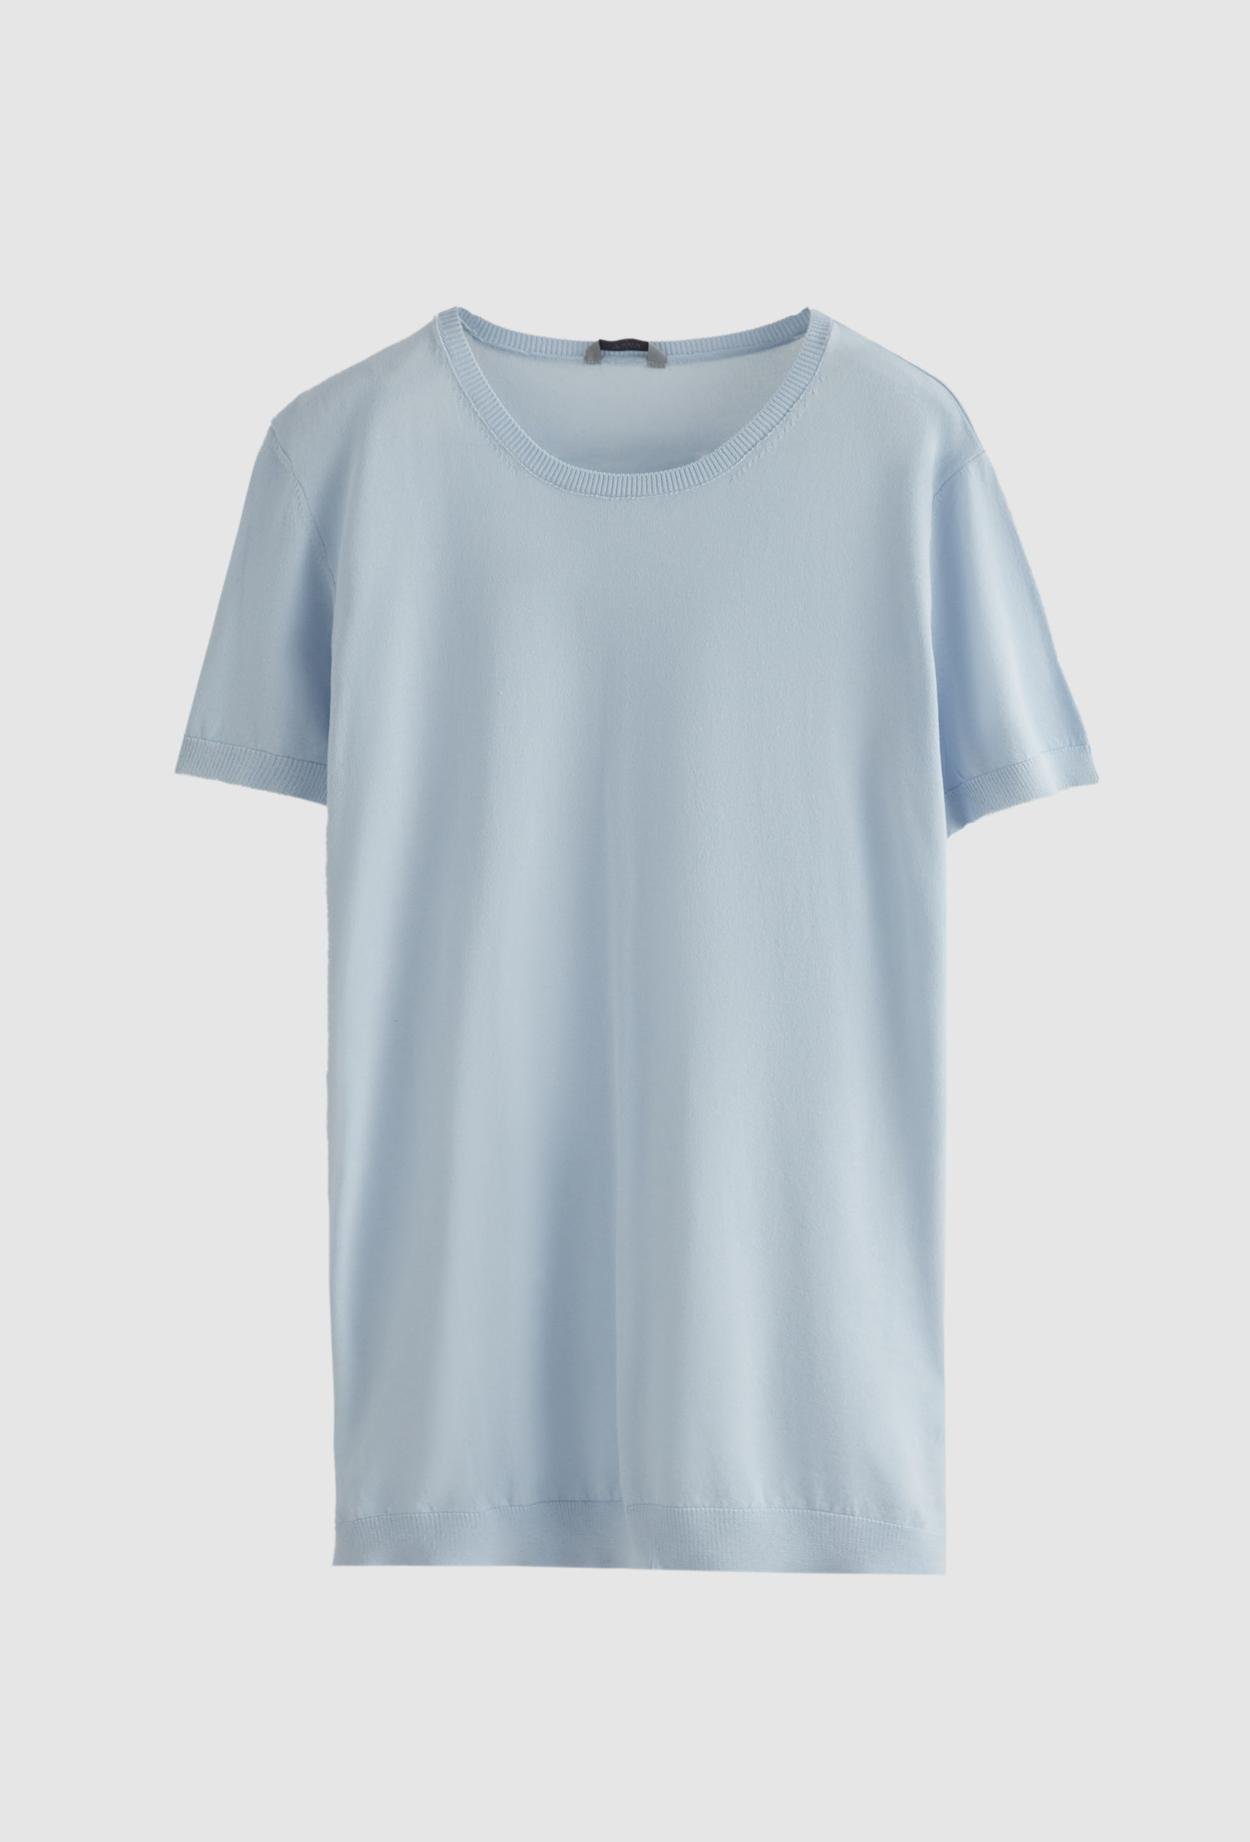 Twn Slim Fit Mavi Düz Örgü Rayon Örme T-Shirt